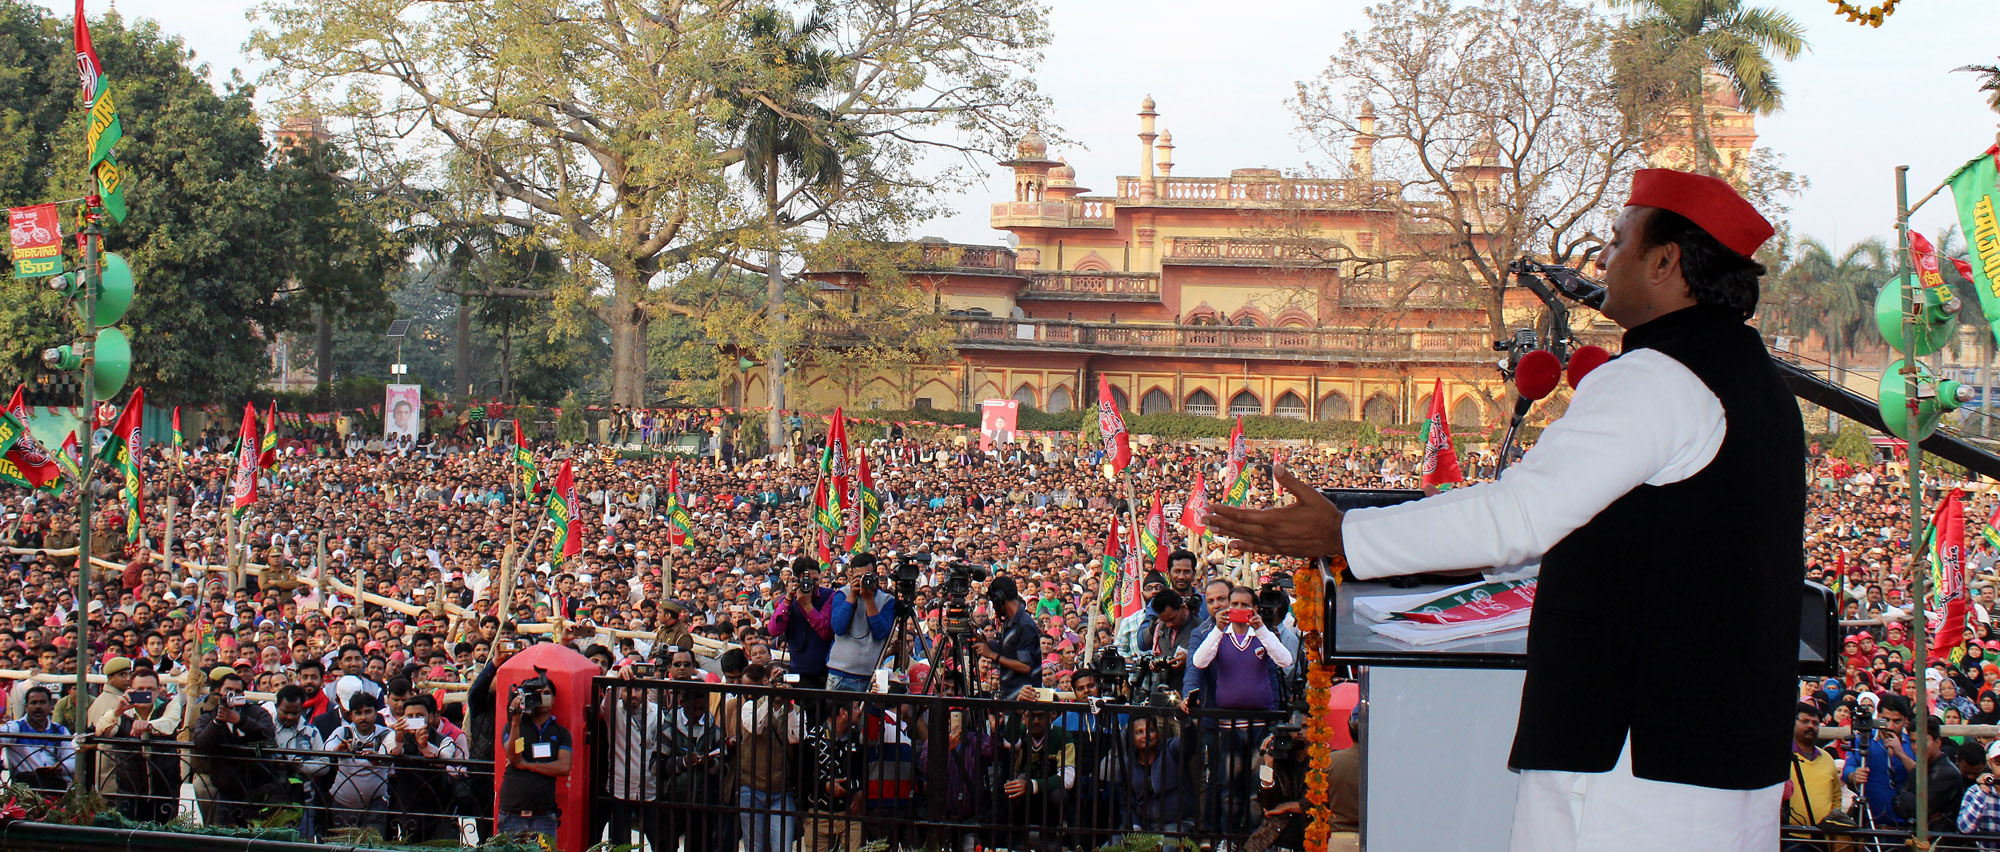 UP CM Akhilesh Yadav addressing rally in Bijnor